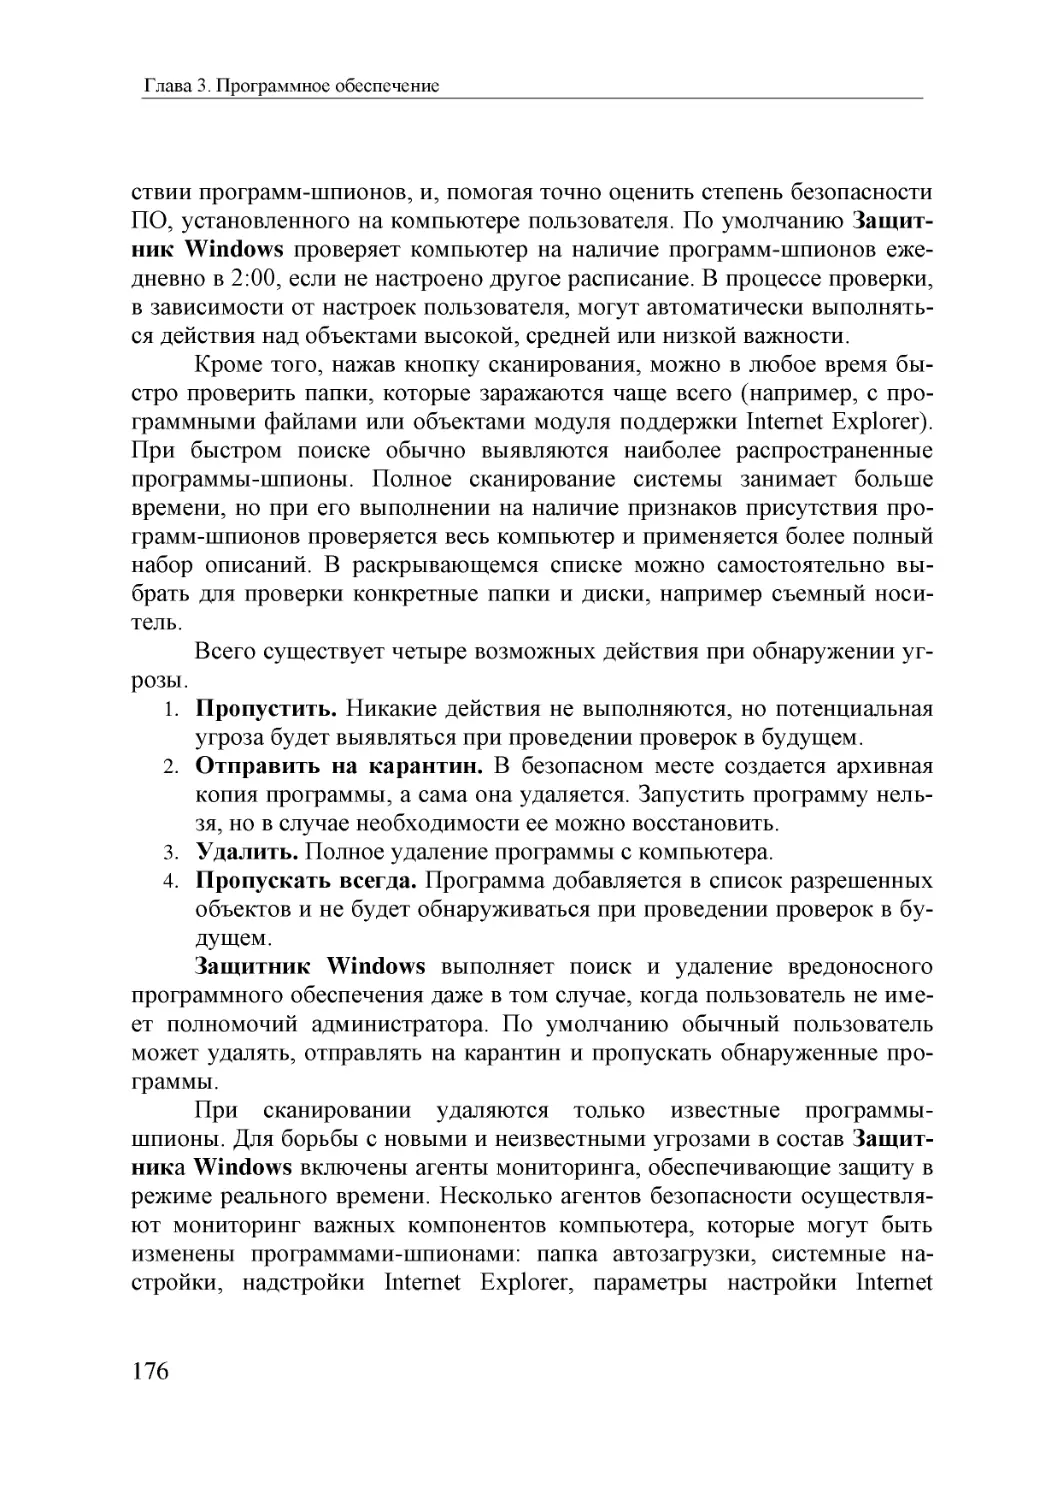 Informatika_Uchebnik_dlya_vuzov_2010 176